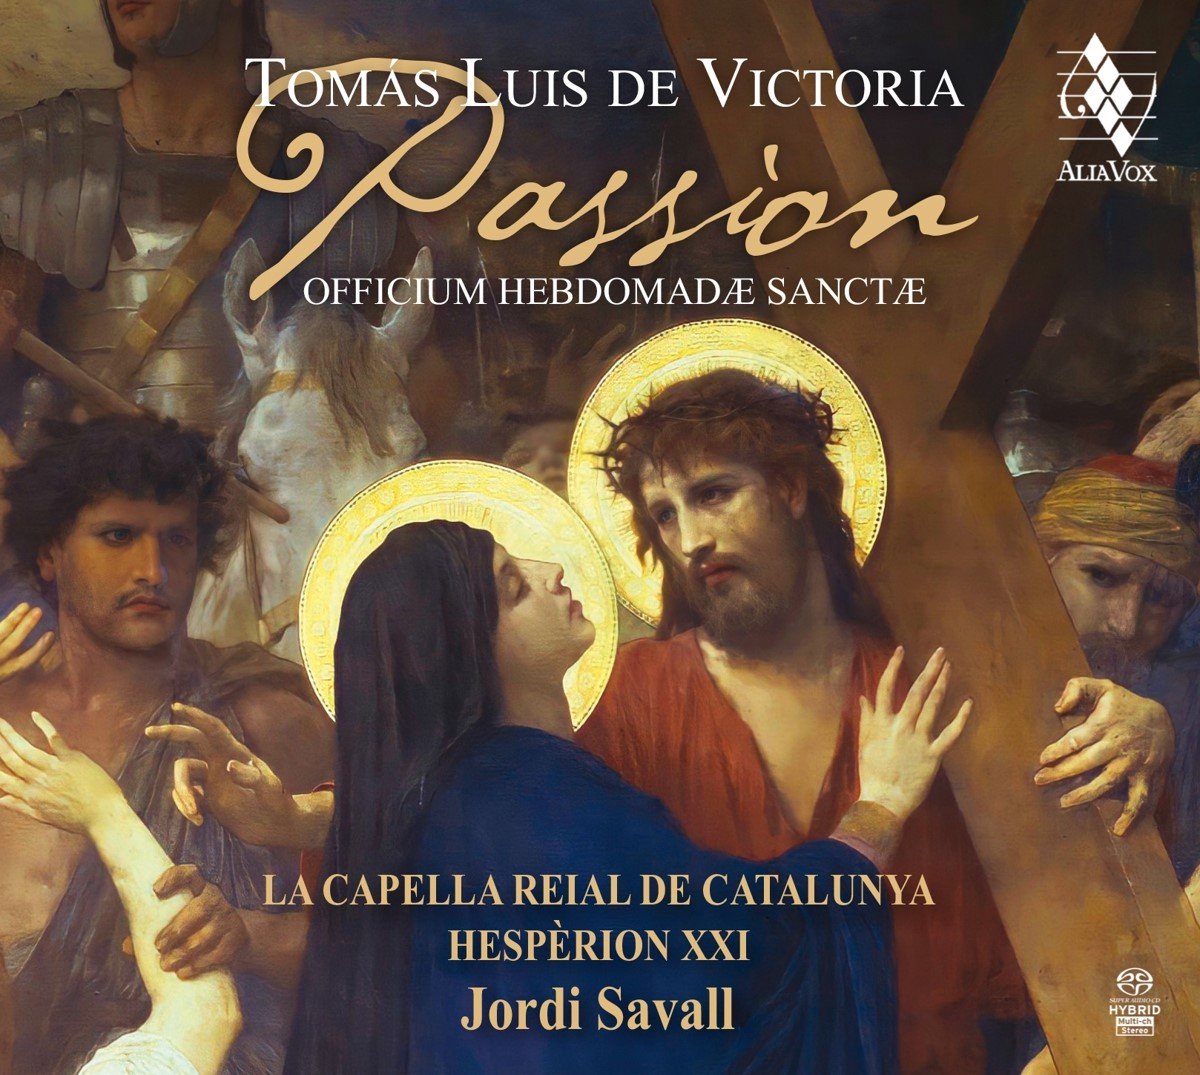 Hesperion XXI Jordi Savall Capella - Passion Officium Hebdomadae Sanctae (3 Super Audio CD) - Hesperion Xxi Jordi Savall Capella